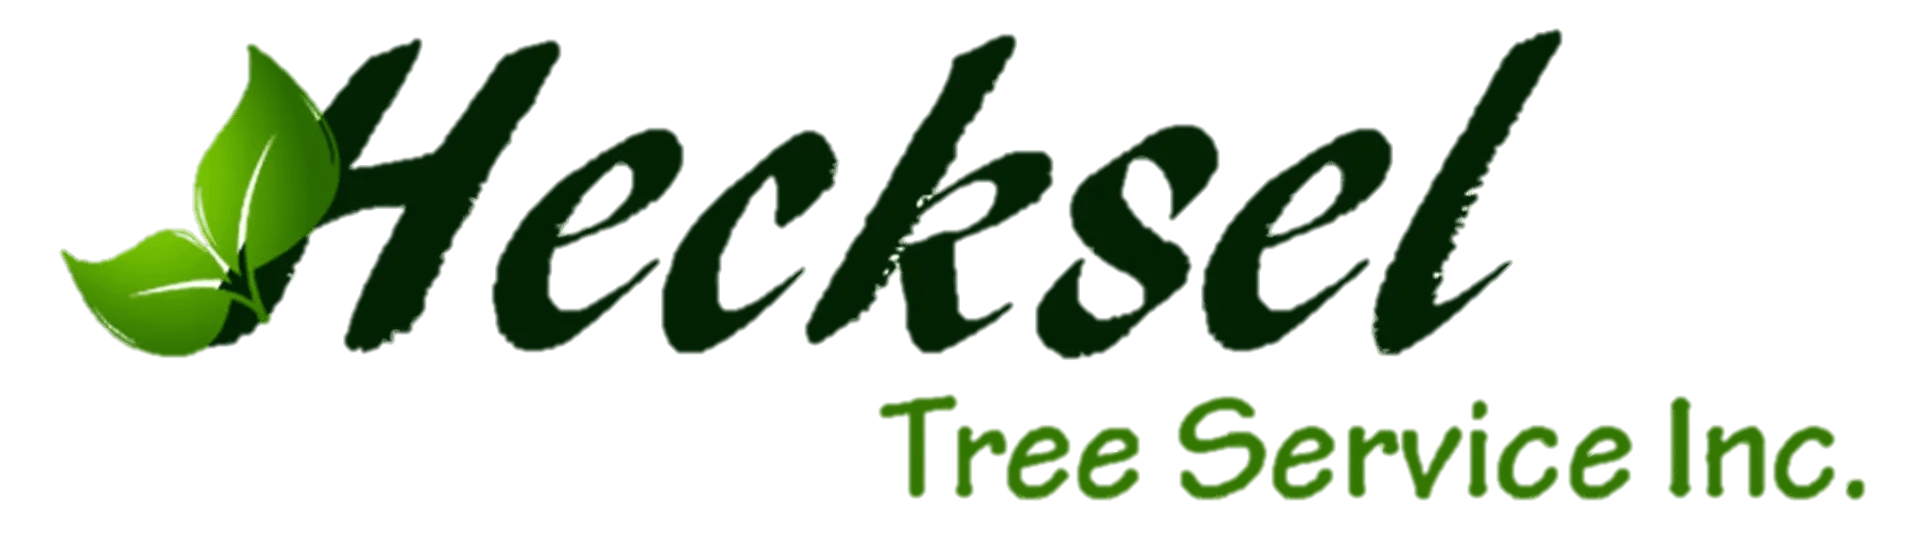 Hecksel Tree Removal Spring Lake